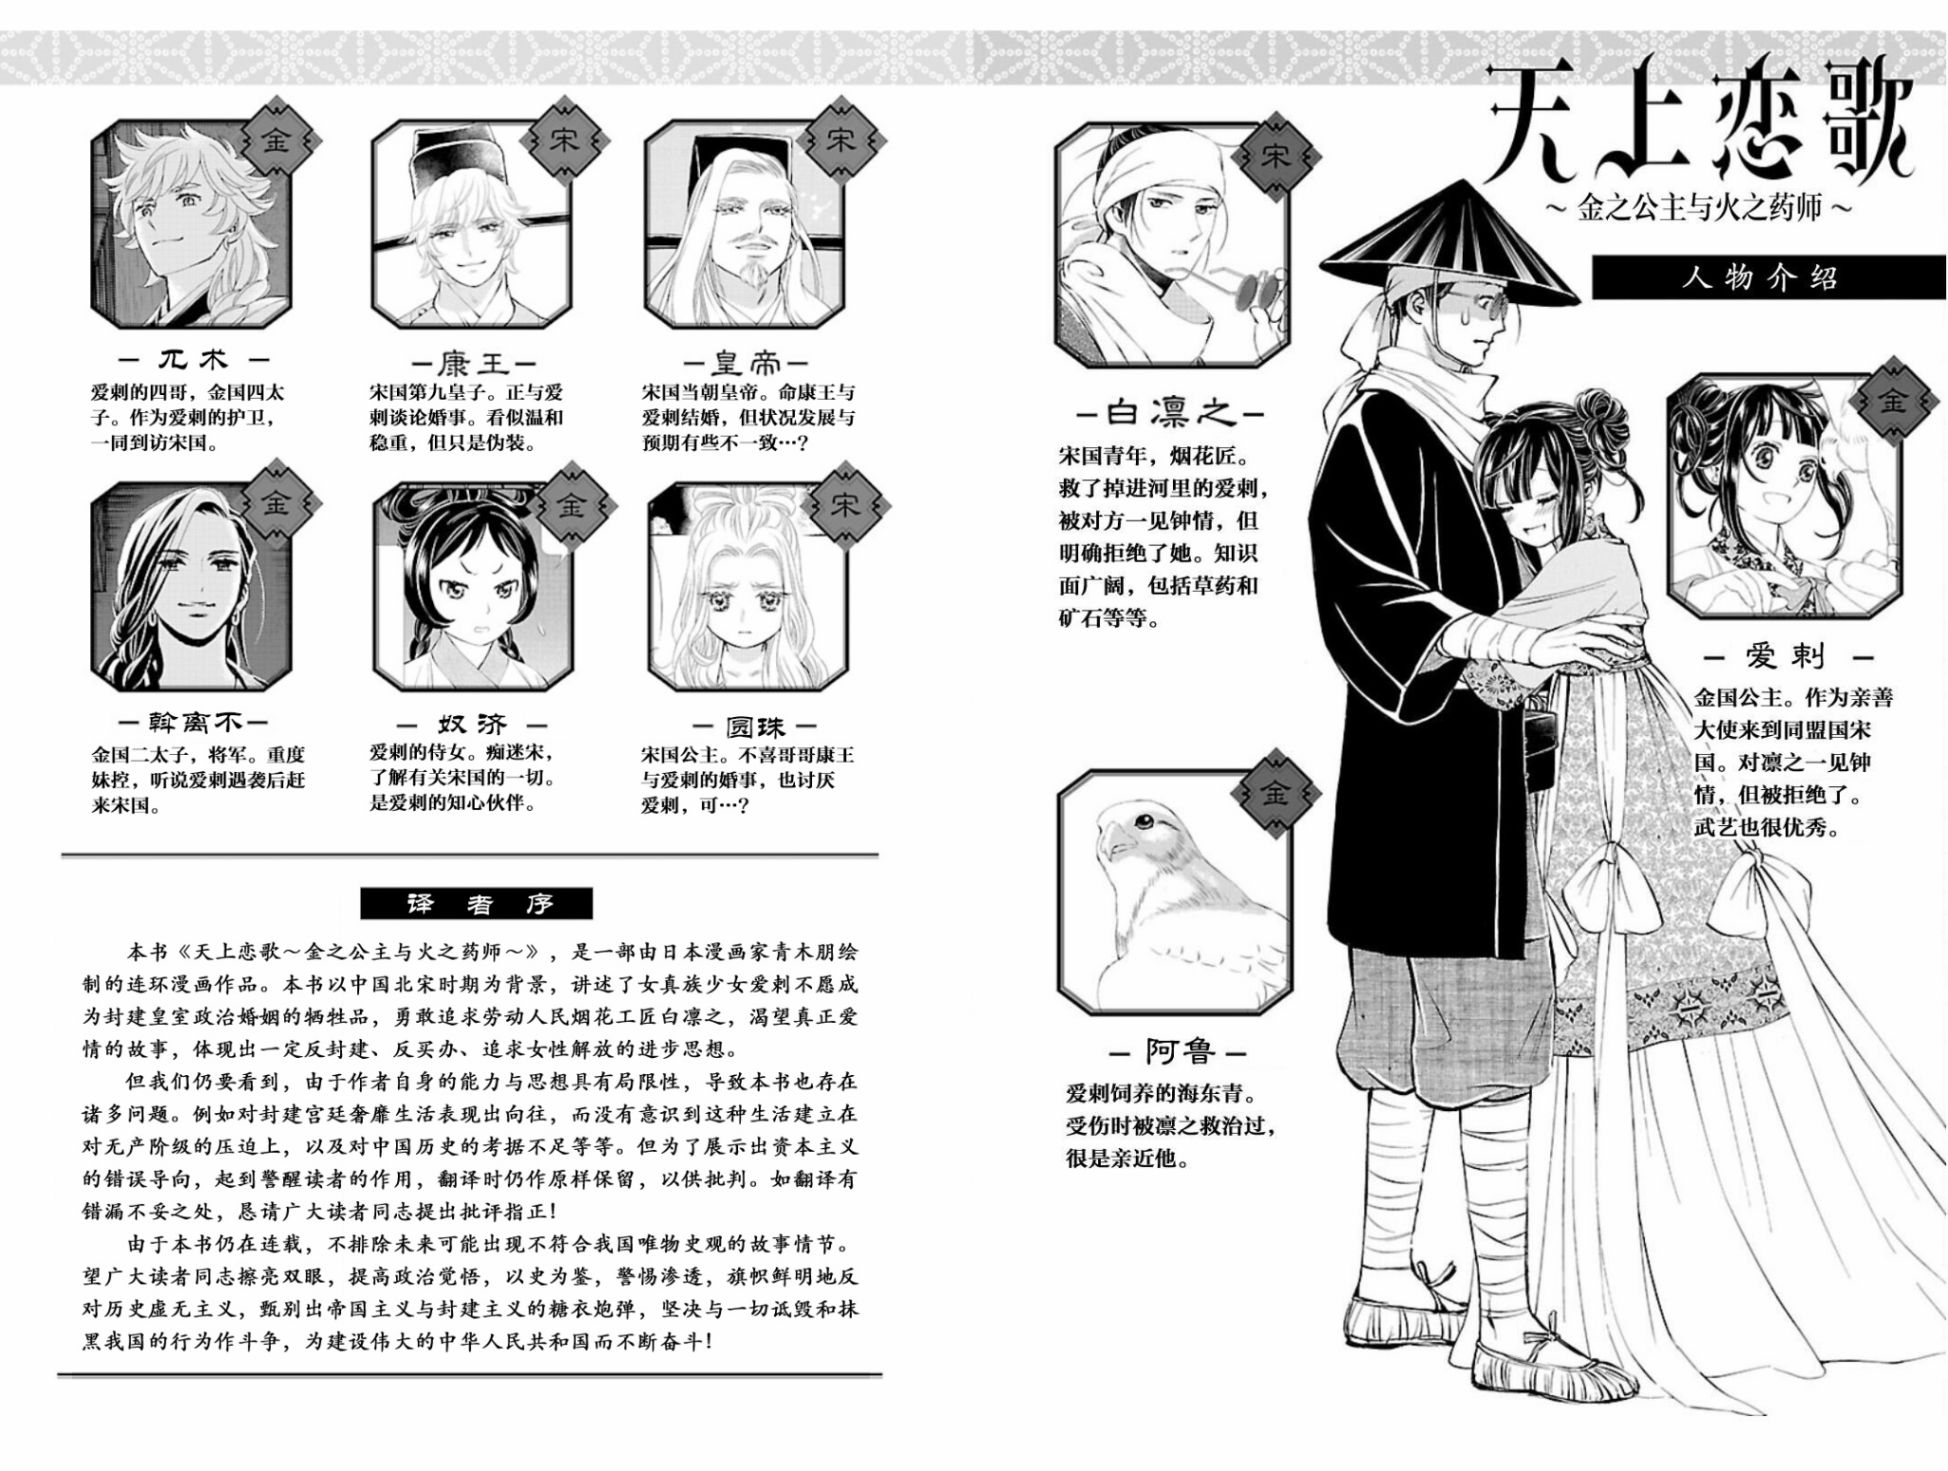 天上恋歌~金之公主与火之药师~漫画,第5话2图